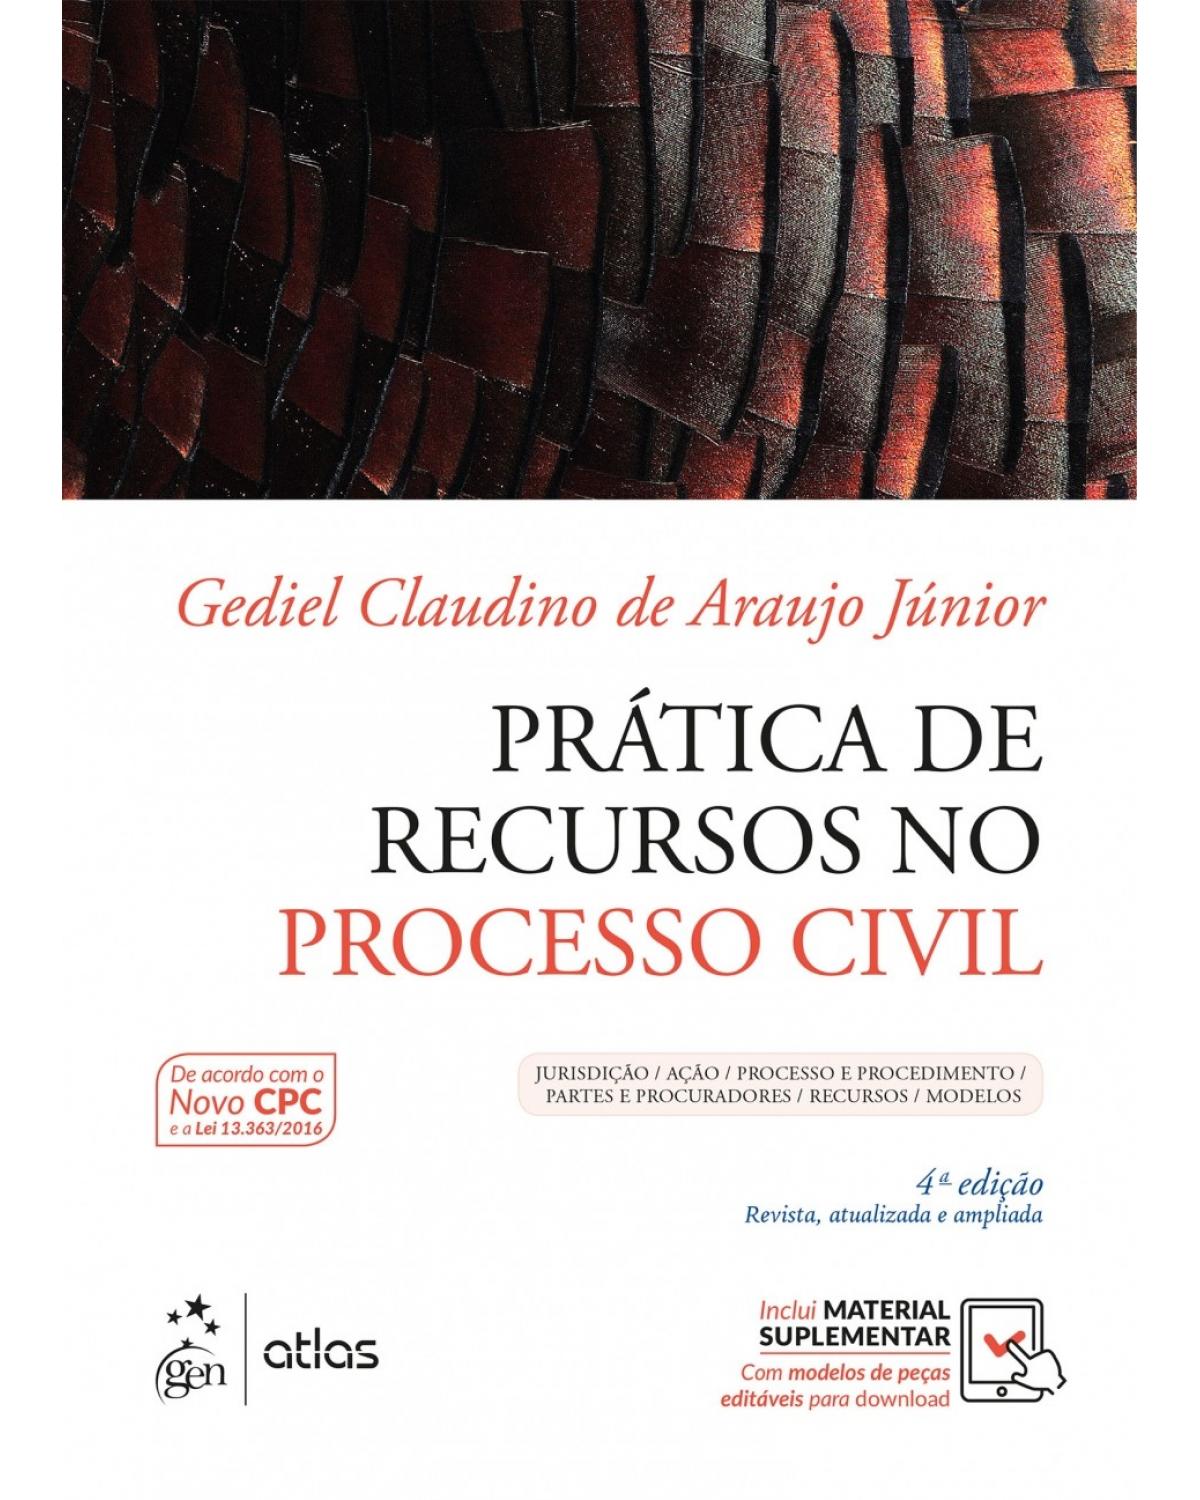 Prática de recursos no processo civil - Jurisdição / Ação / Processo e procedimento / Partes e procuradores / Recursos / Modelos - 4ª Edição | 2017